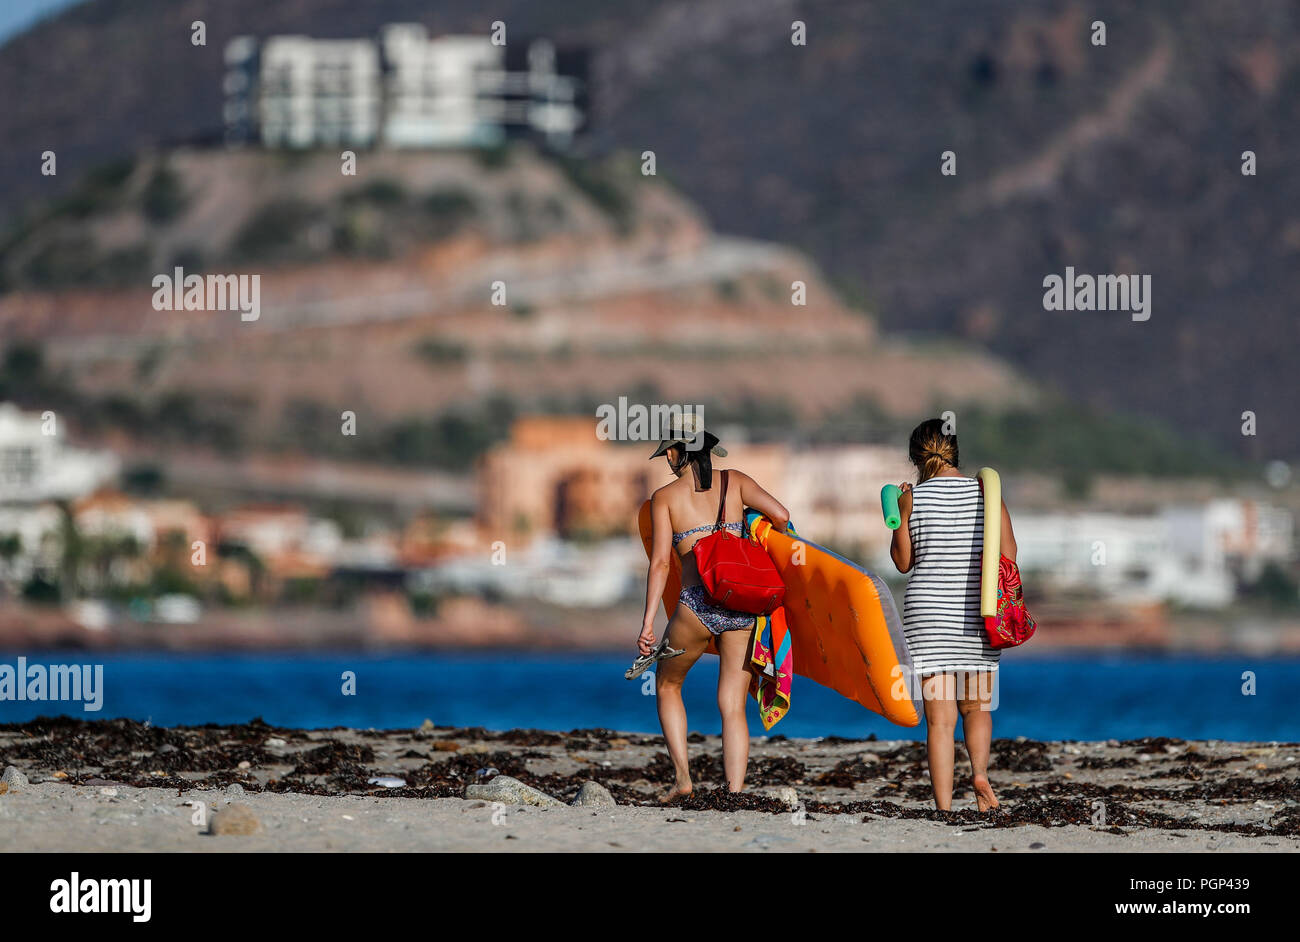 San Carlos, Sonora.  Turistas mujeres en bikini o traje de baño, caminan bajo el sol a la orilla de la playa, llevan con sigo sombrero para el sol y b Stock Photo